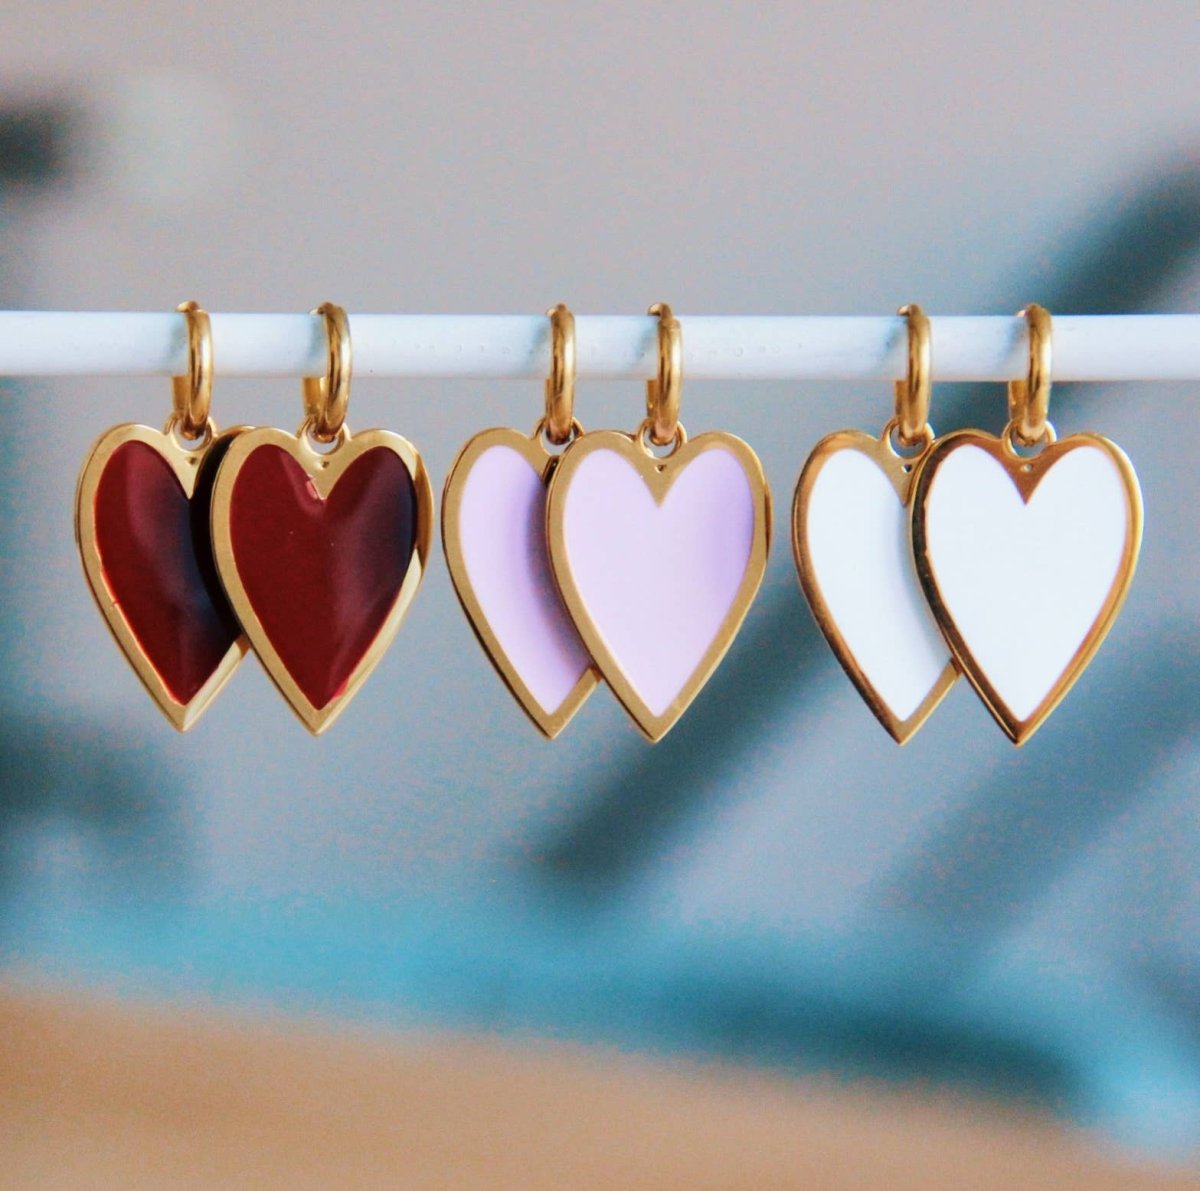 Orecchini con cuore lungo colorato - rosa chiaro/oro - Infinity Concept Store